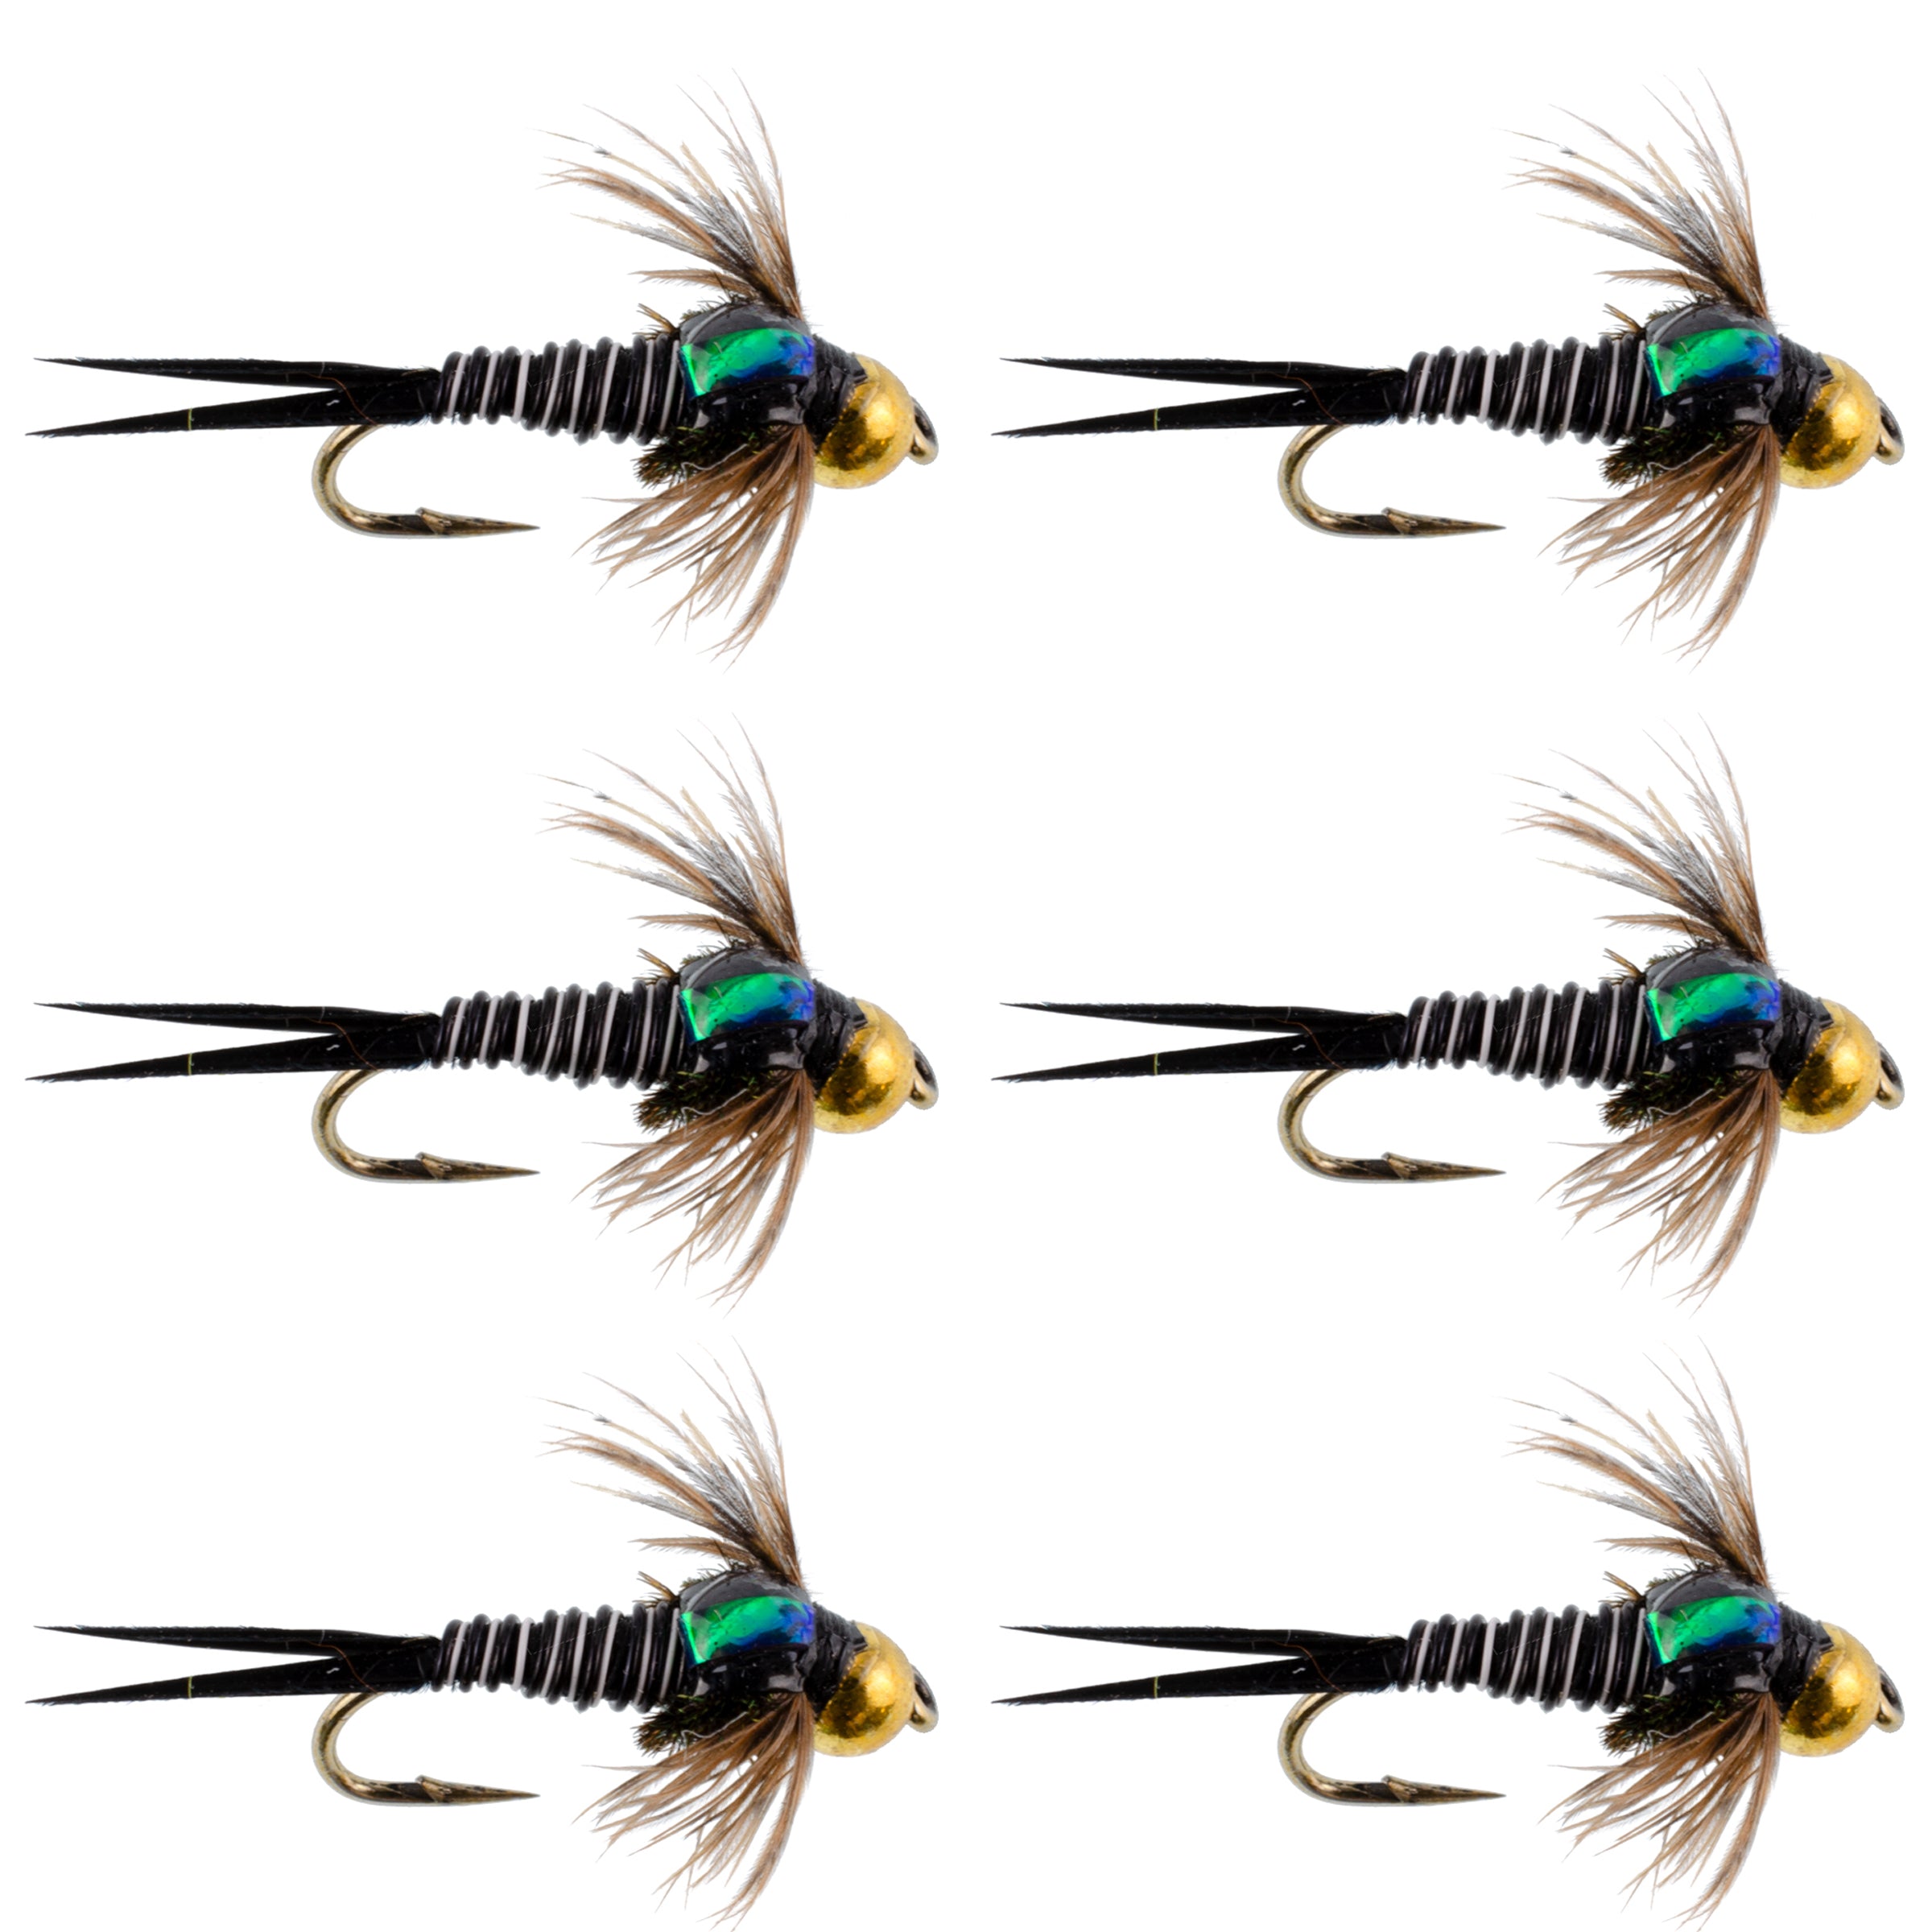 Bead Head Zebra Copper John Nymph Moscas de pesca con mosca – Juego de 6 anzuelos para moscas, tamaño 14 